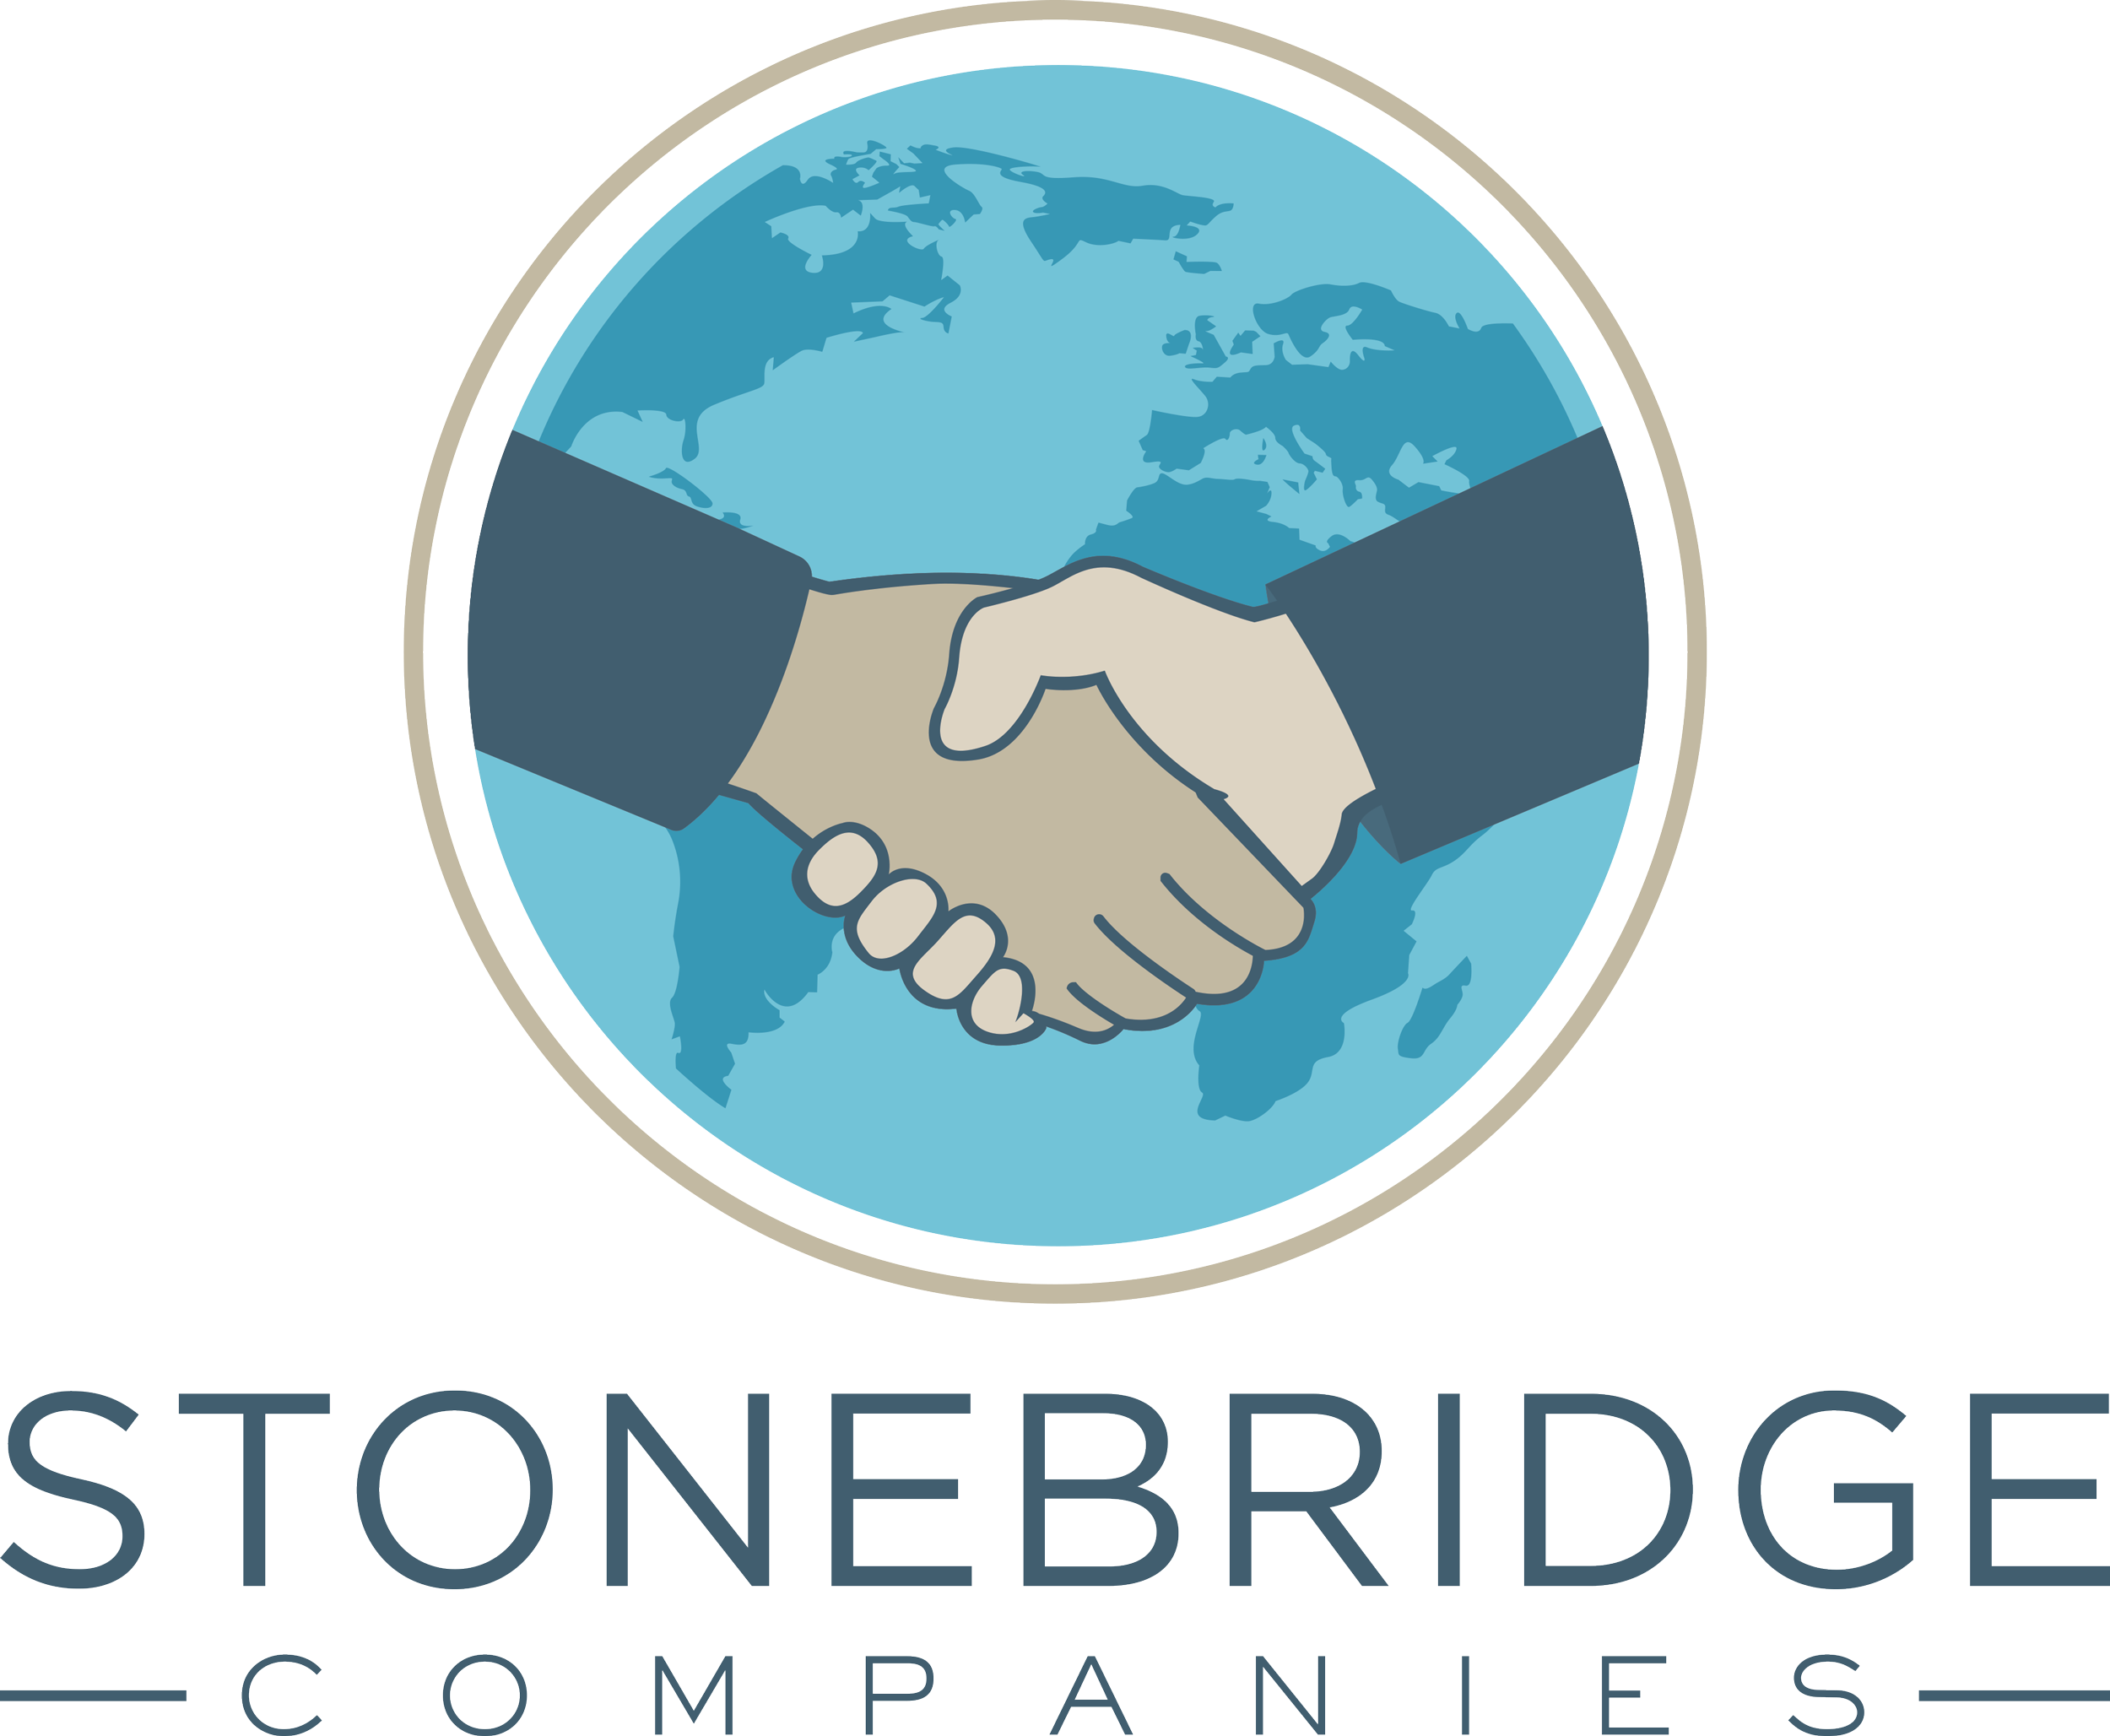 Stonebridge Companies Logo